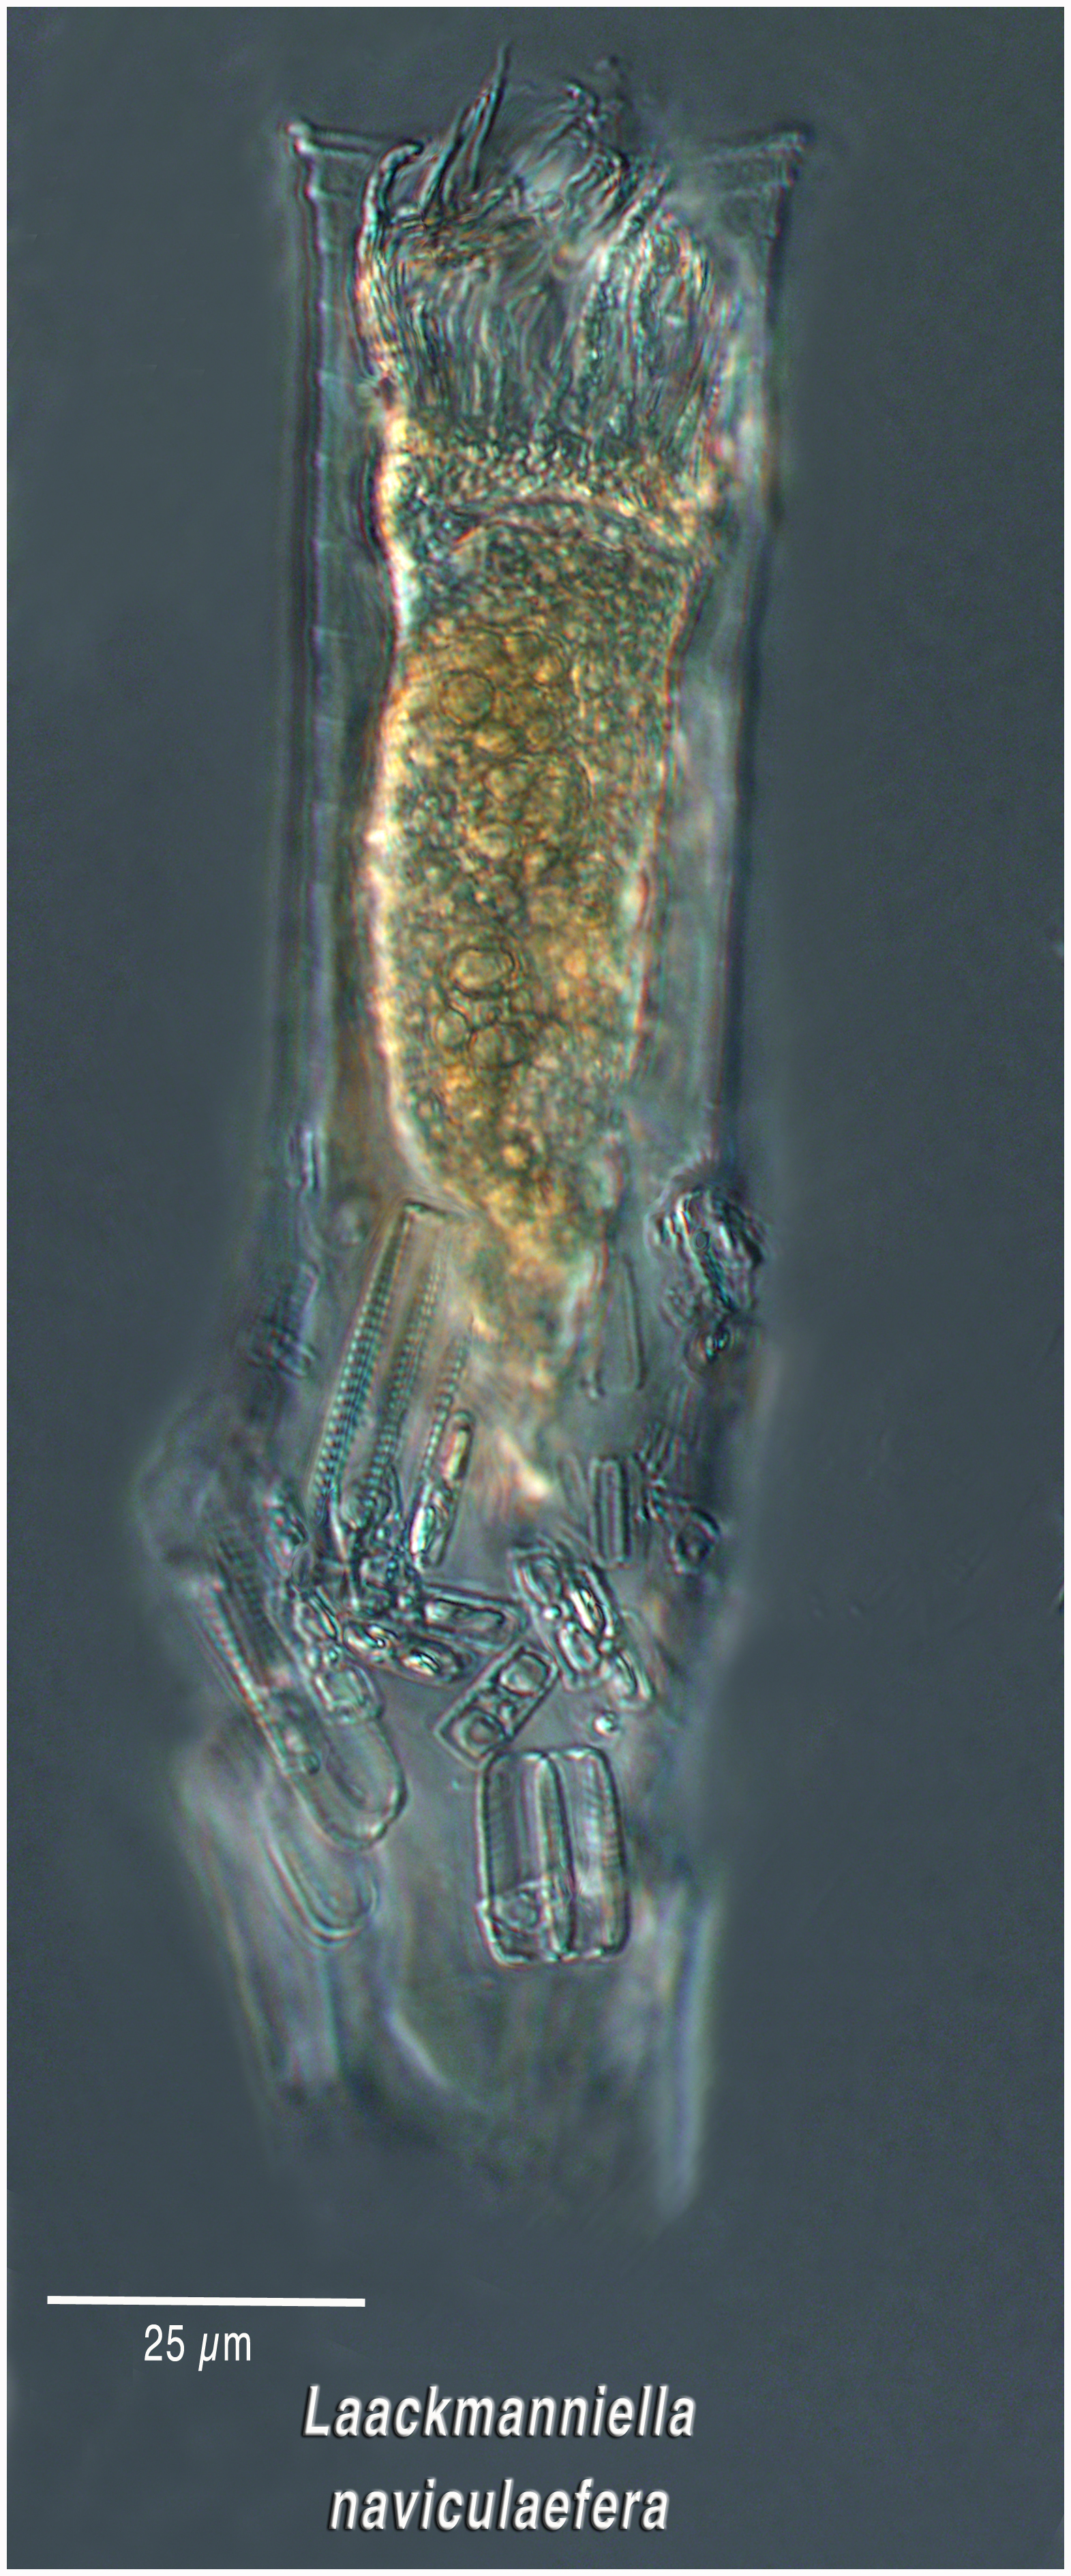 Laackmanniella naviculaefera (diatom collector)